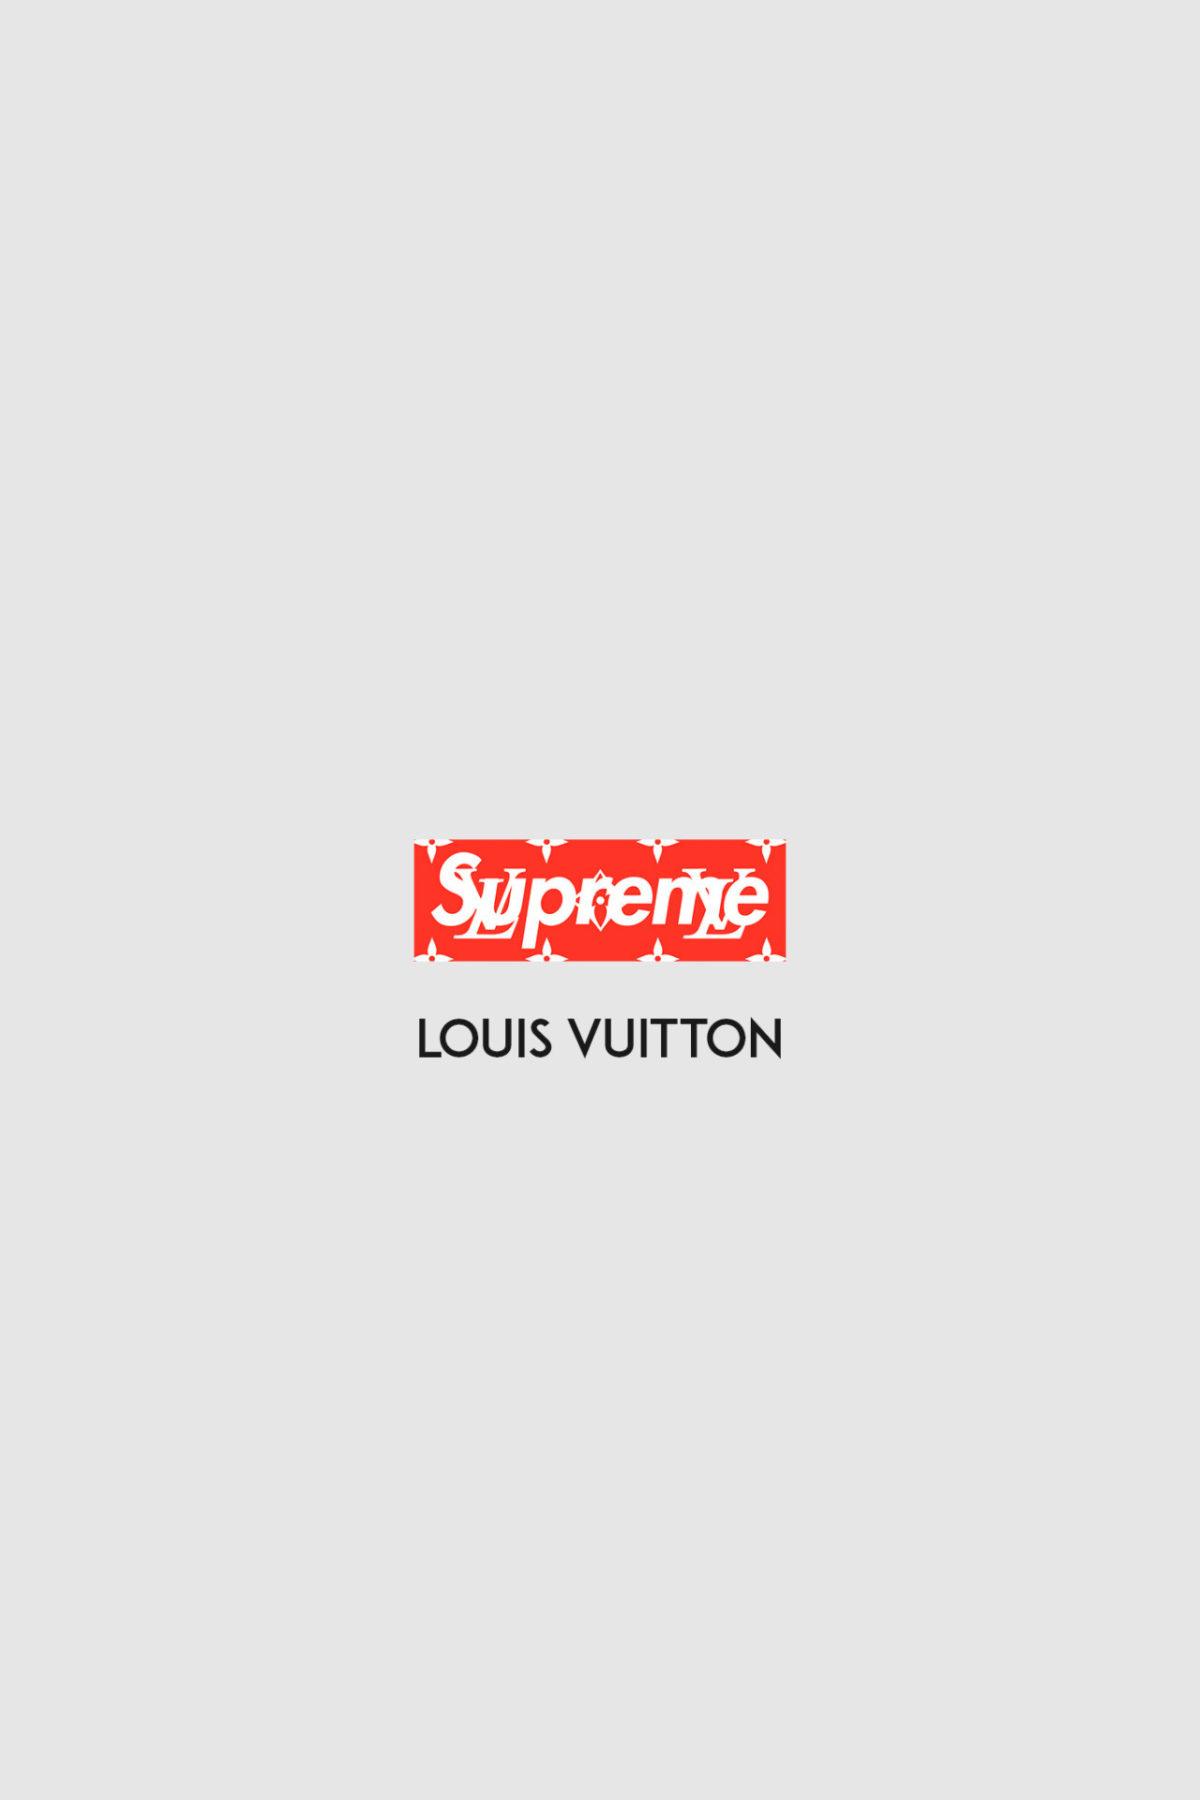 Supreme x Louis Vuitton wallpaper